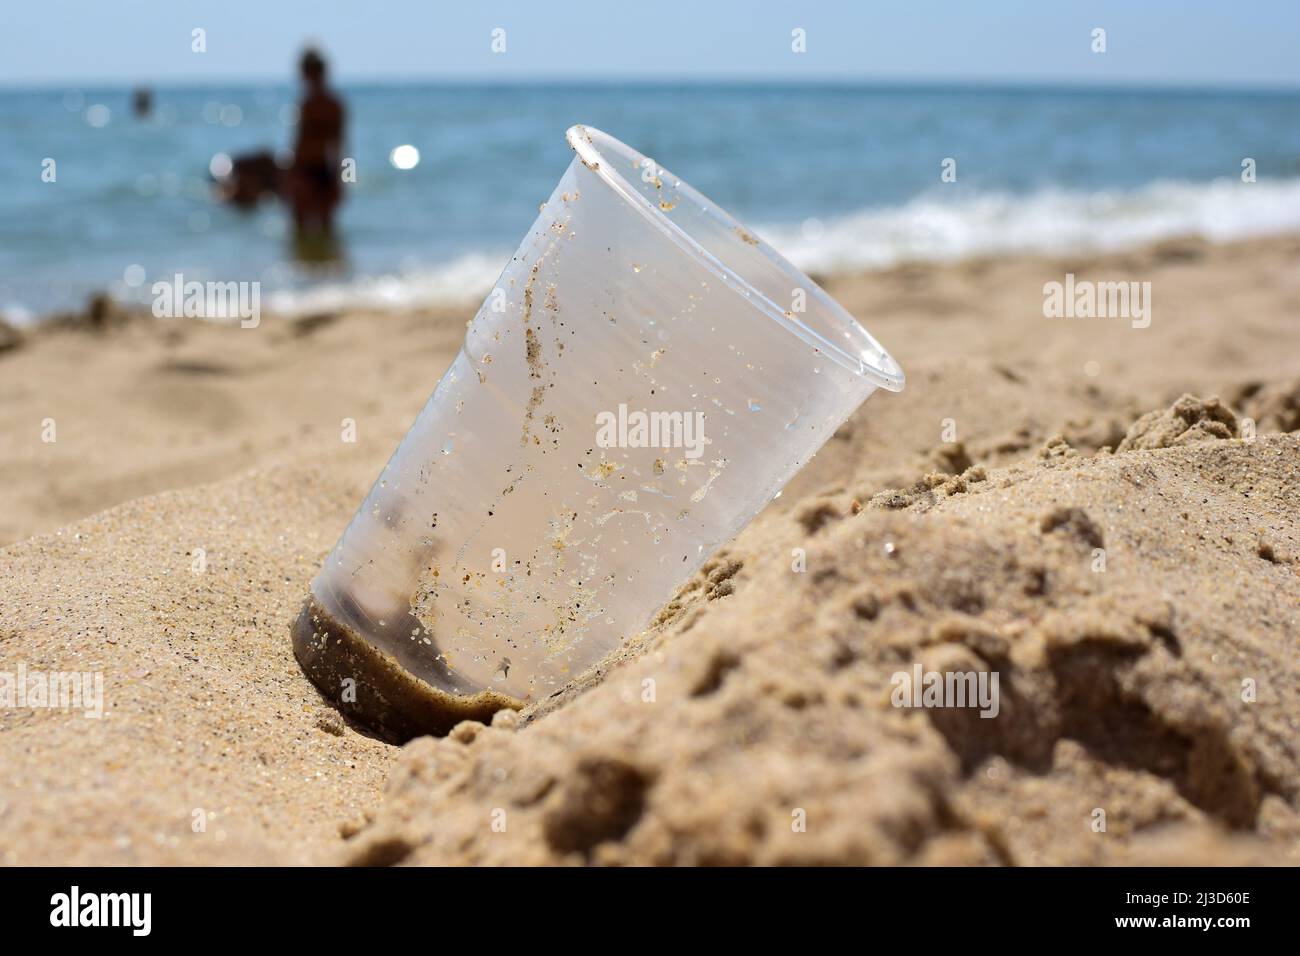 Sulla spiaggia sabbiosa del mare si trova un cristallo sporco in plastica primo piano. Lo sfondo è molto sfocato Foto Stock